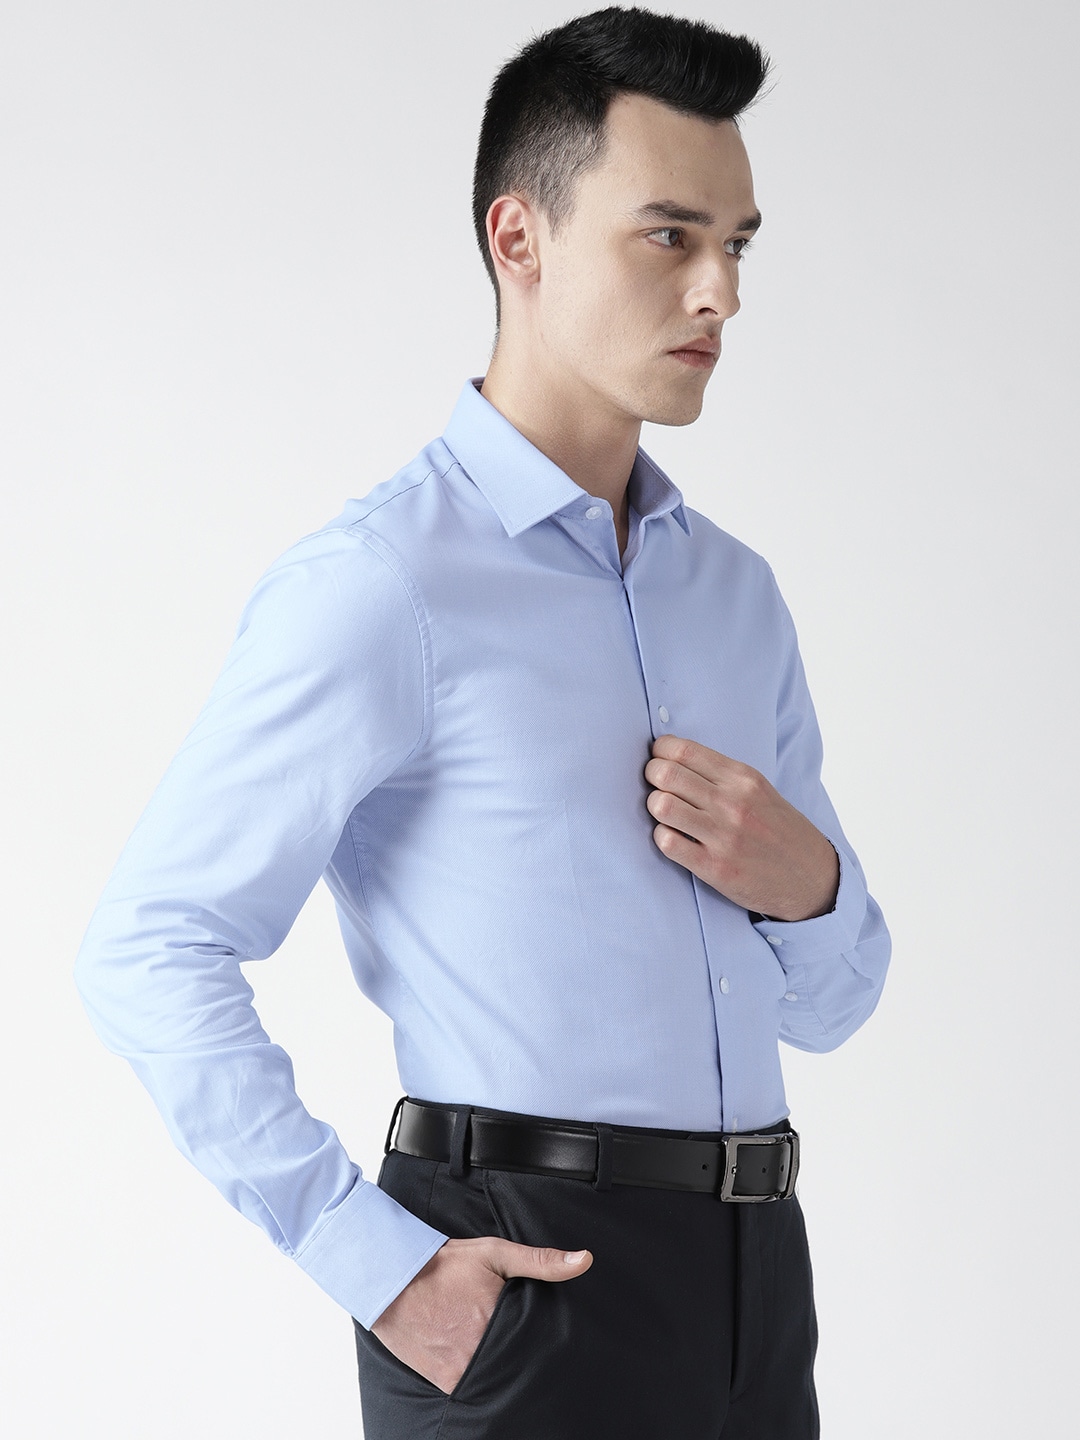 10 Best Light Blue Shirt For Men | Light Blue Formal Shirts | True Buddy